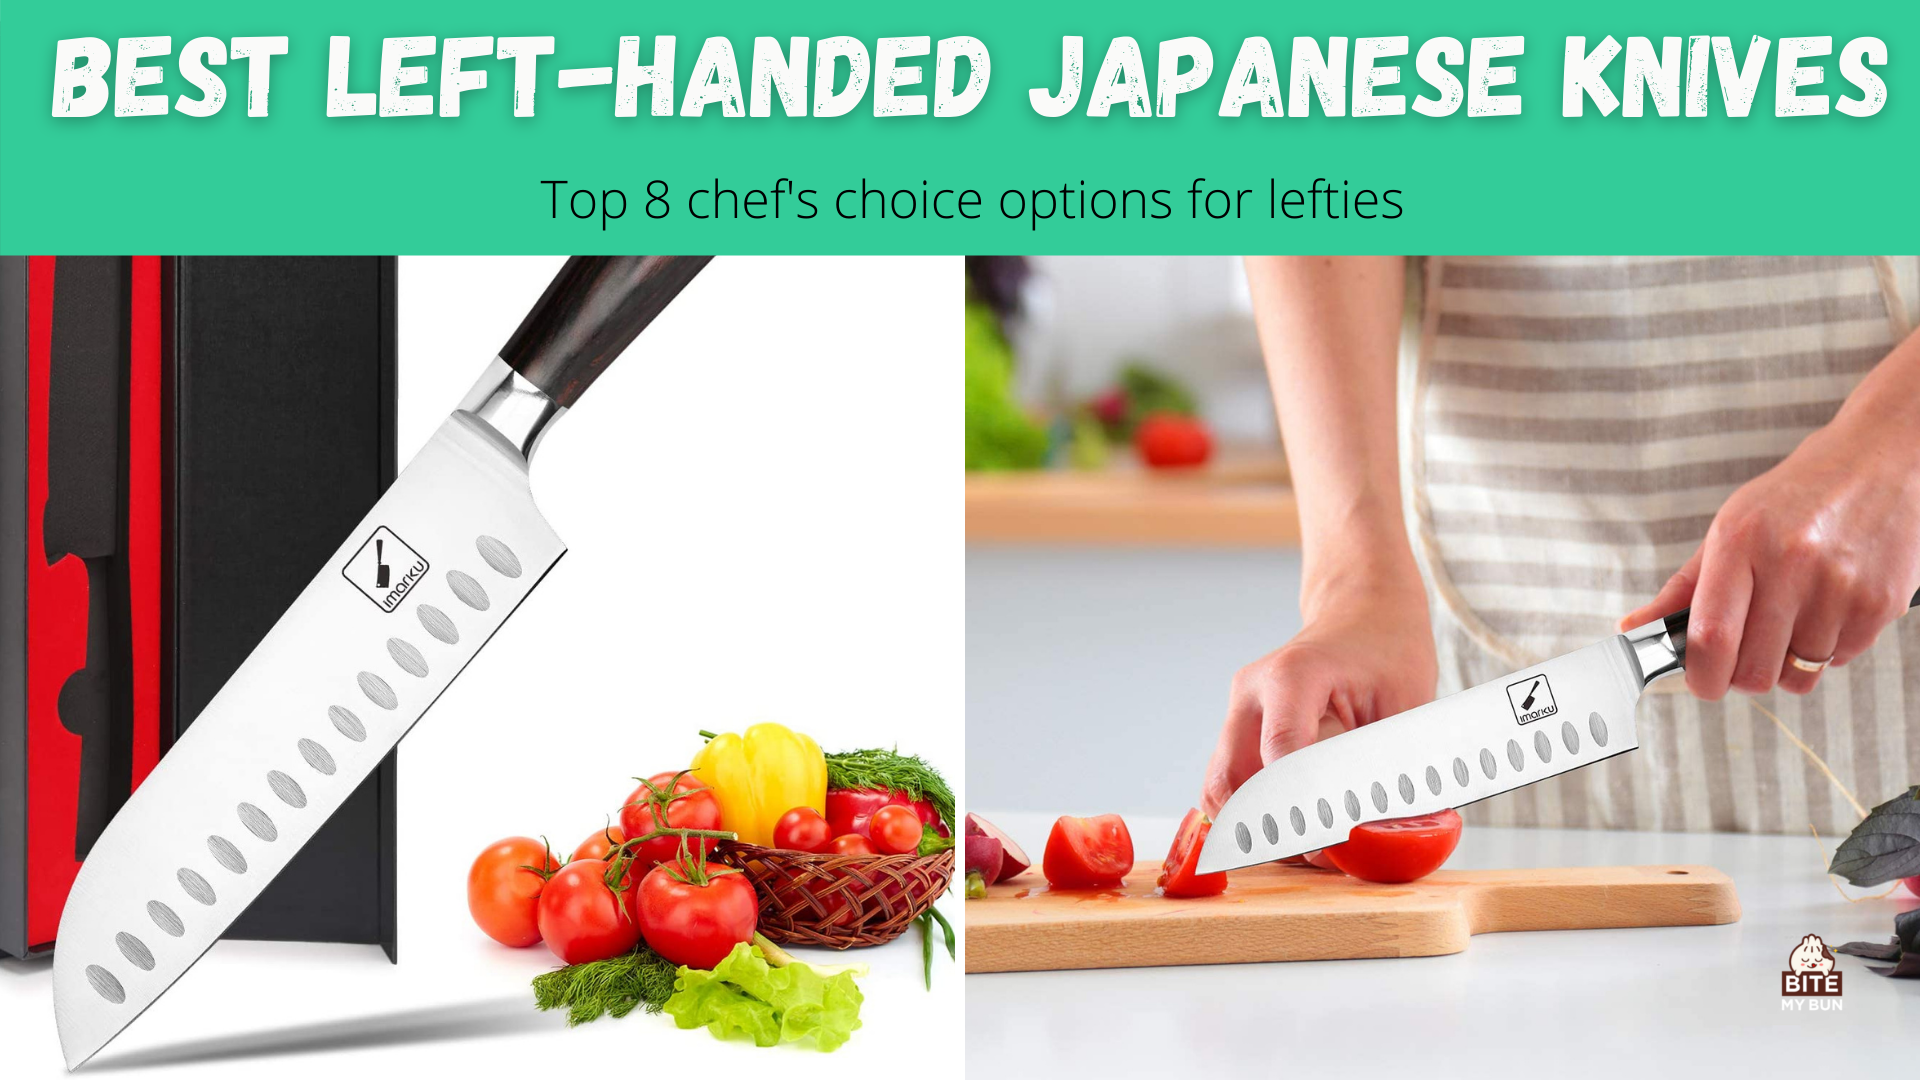 สุดยอดมีดญี่ปุ่นถนัดซ้าย | 8 ตัวเลือกยอดนิยมของเชฟสำหรับคนถนัดซ้าย